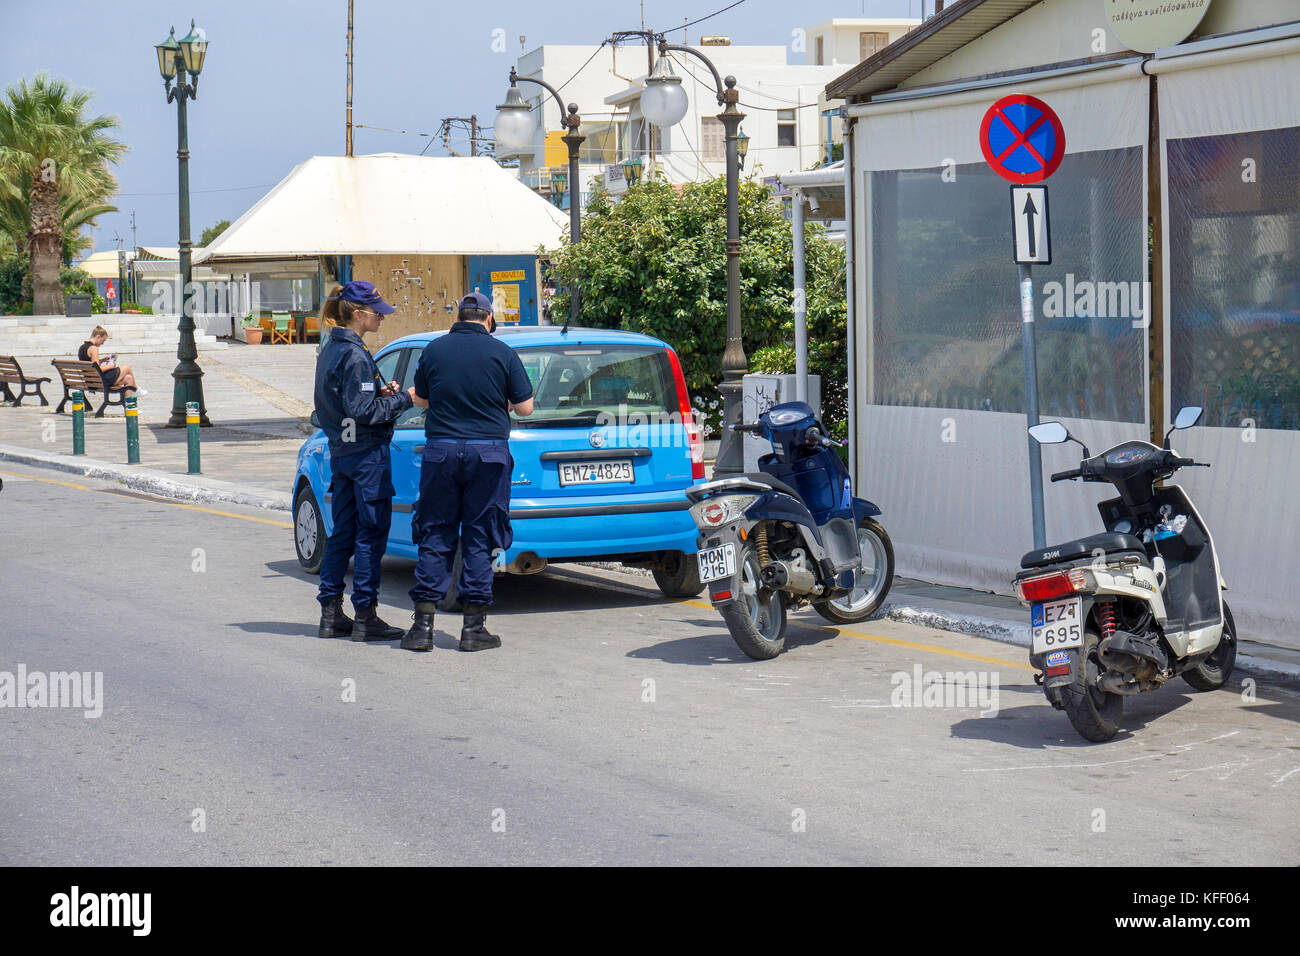 La policía de tráfico griego en un aparcamiento sin esperar, en la ciudad de Naxos, Naxos Island, las Islas Cícladas, del mar Egeo, Grecia Foto de stock